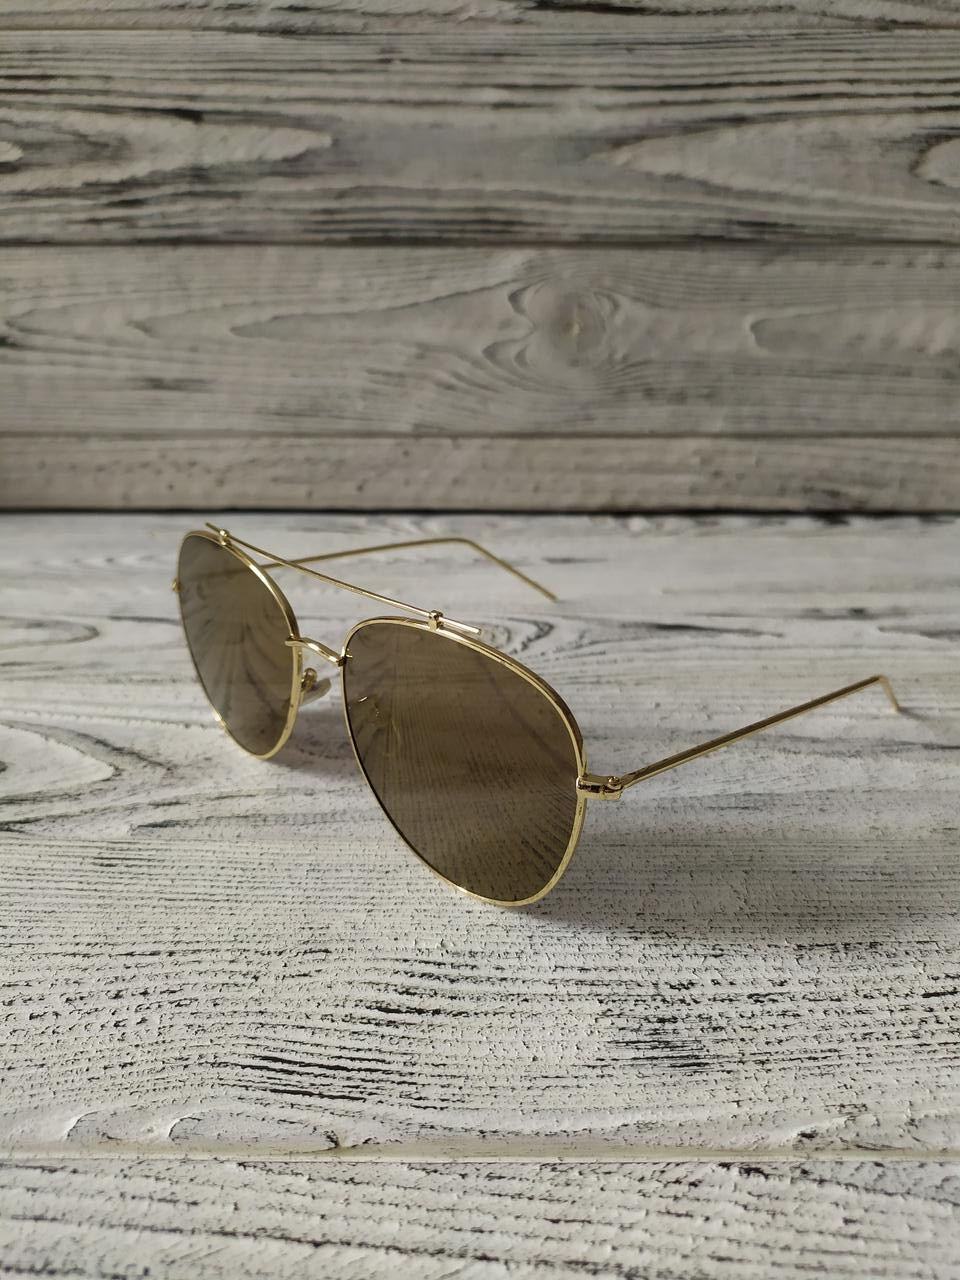 Сонцезахисні окуляри авіатор коричневі унісекс у металевій оправі